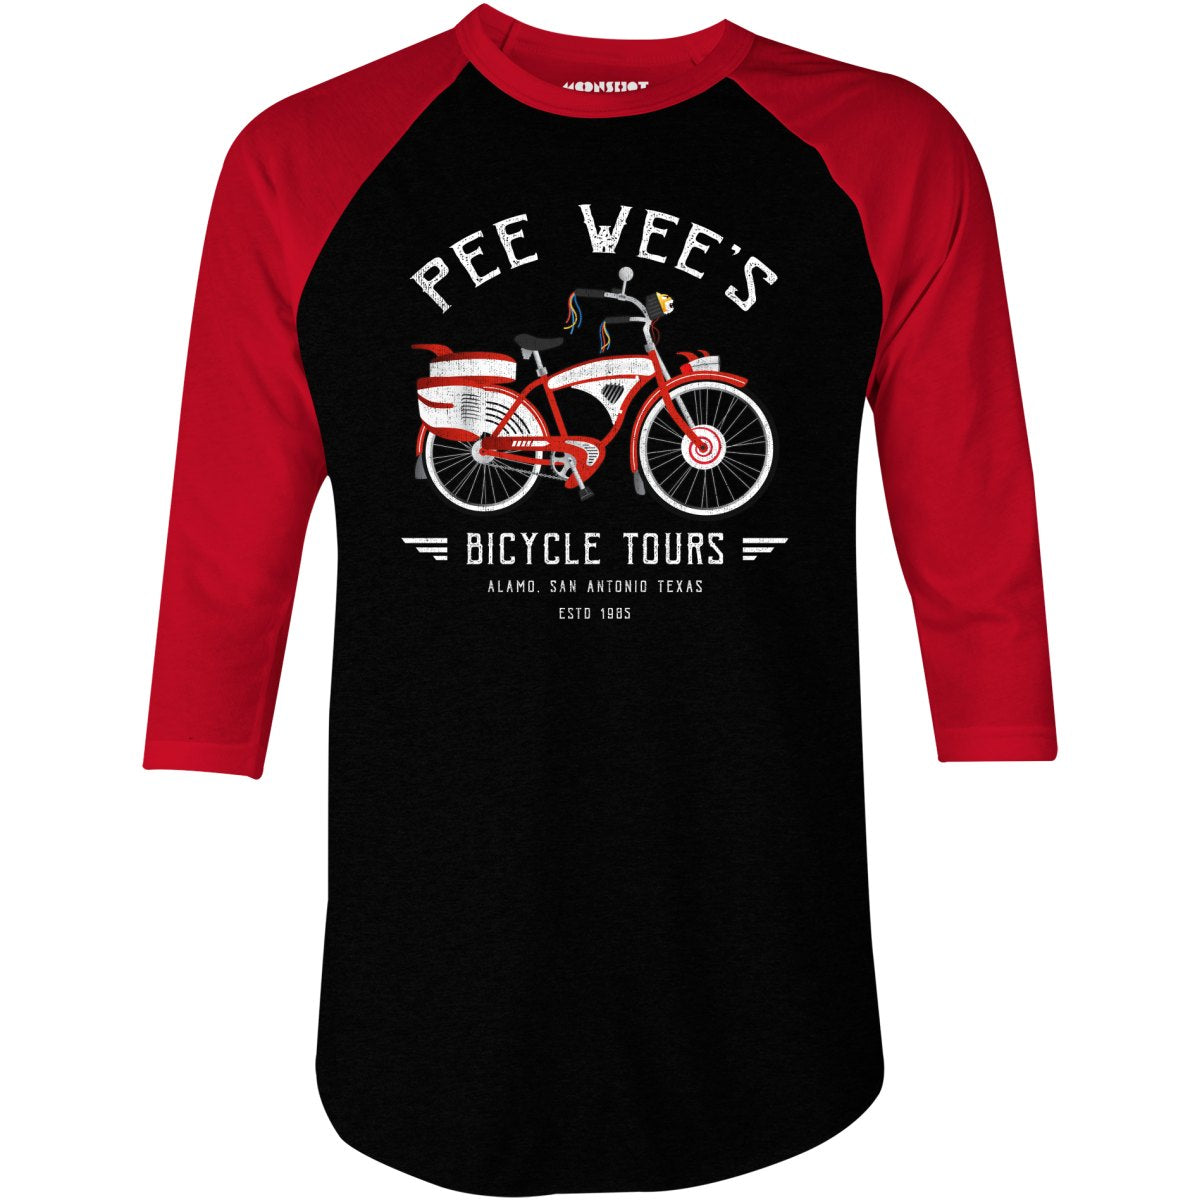 Pee Wee's Bicycle Tours - 3/4 Sleeve Raglan T-Shirt